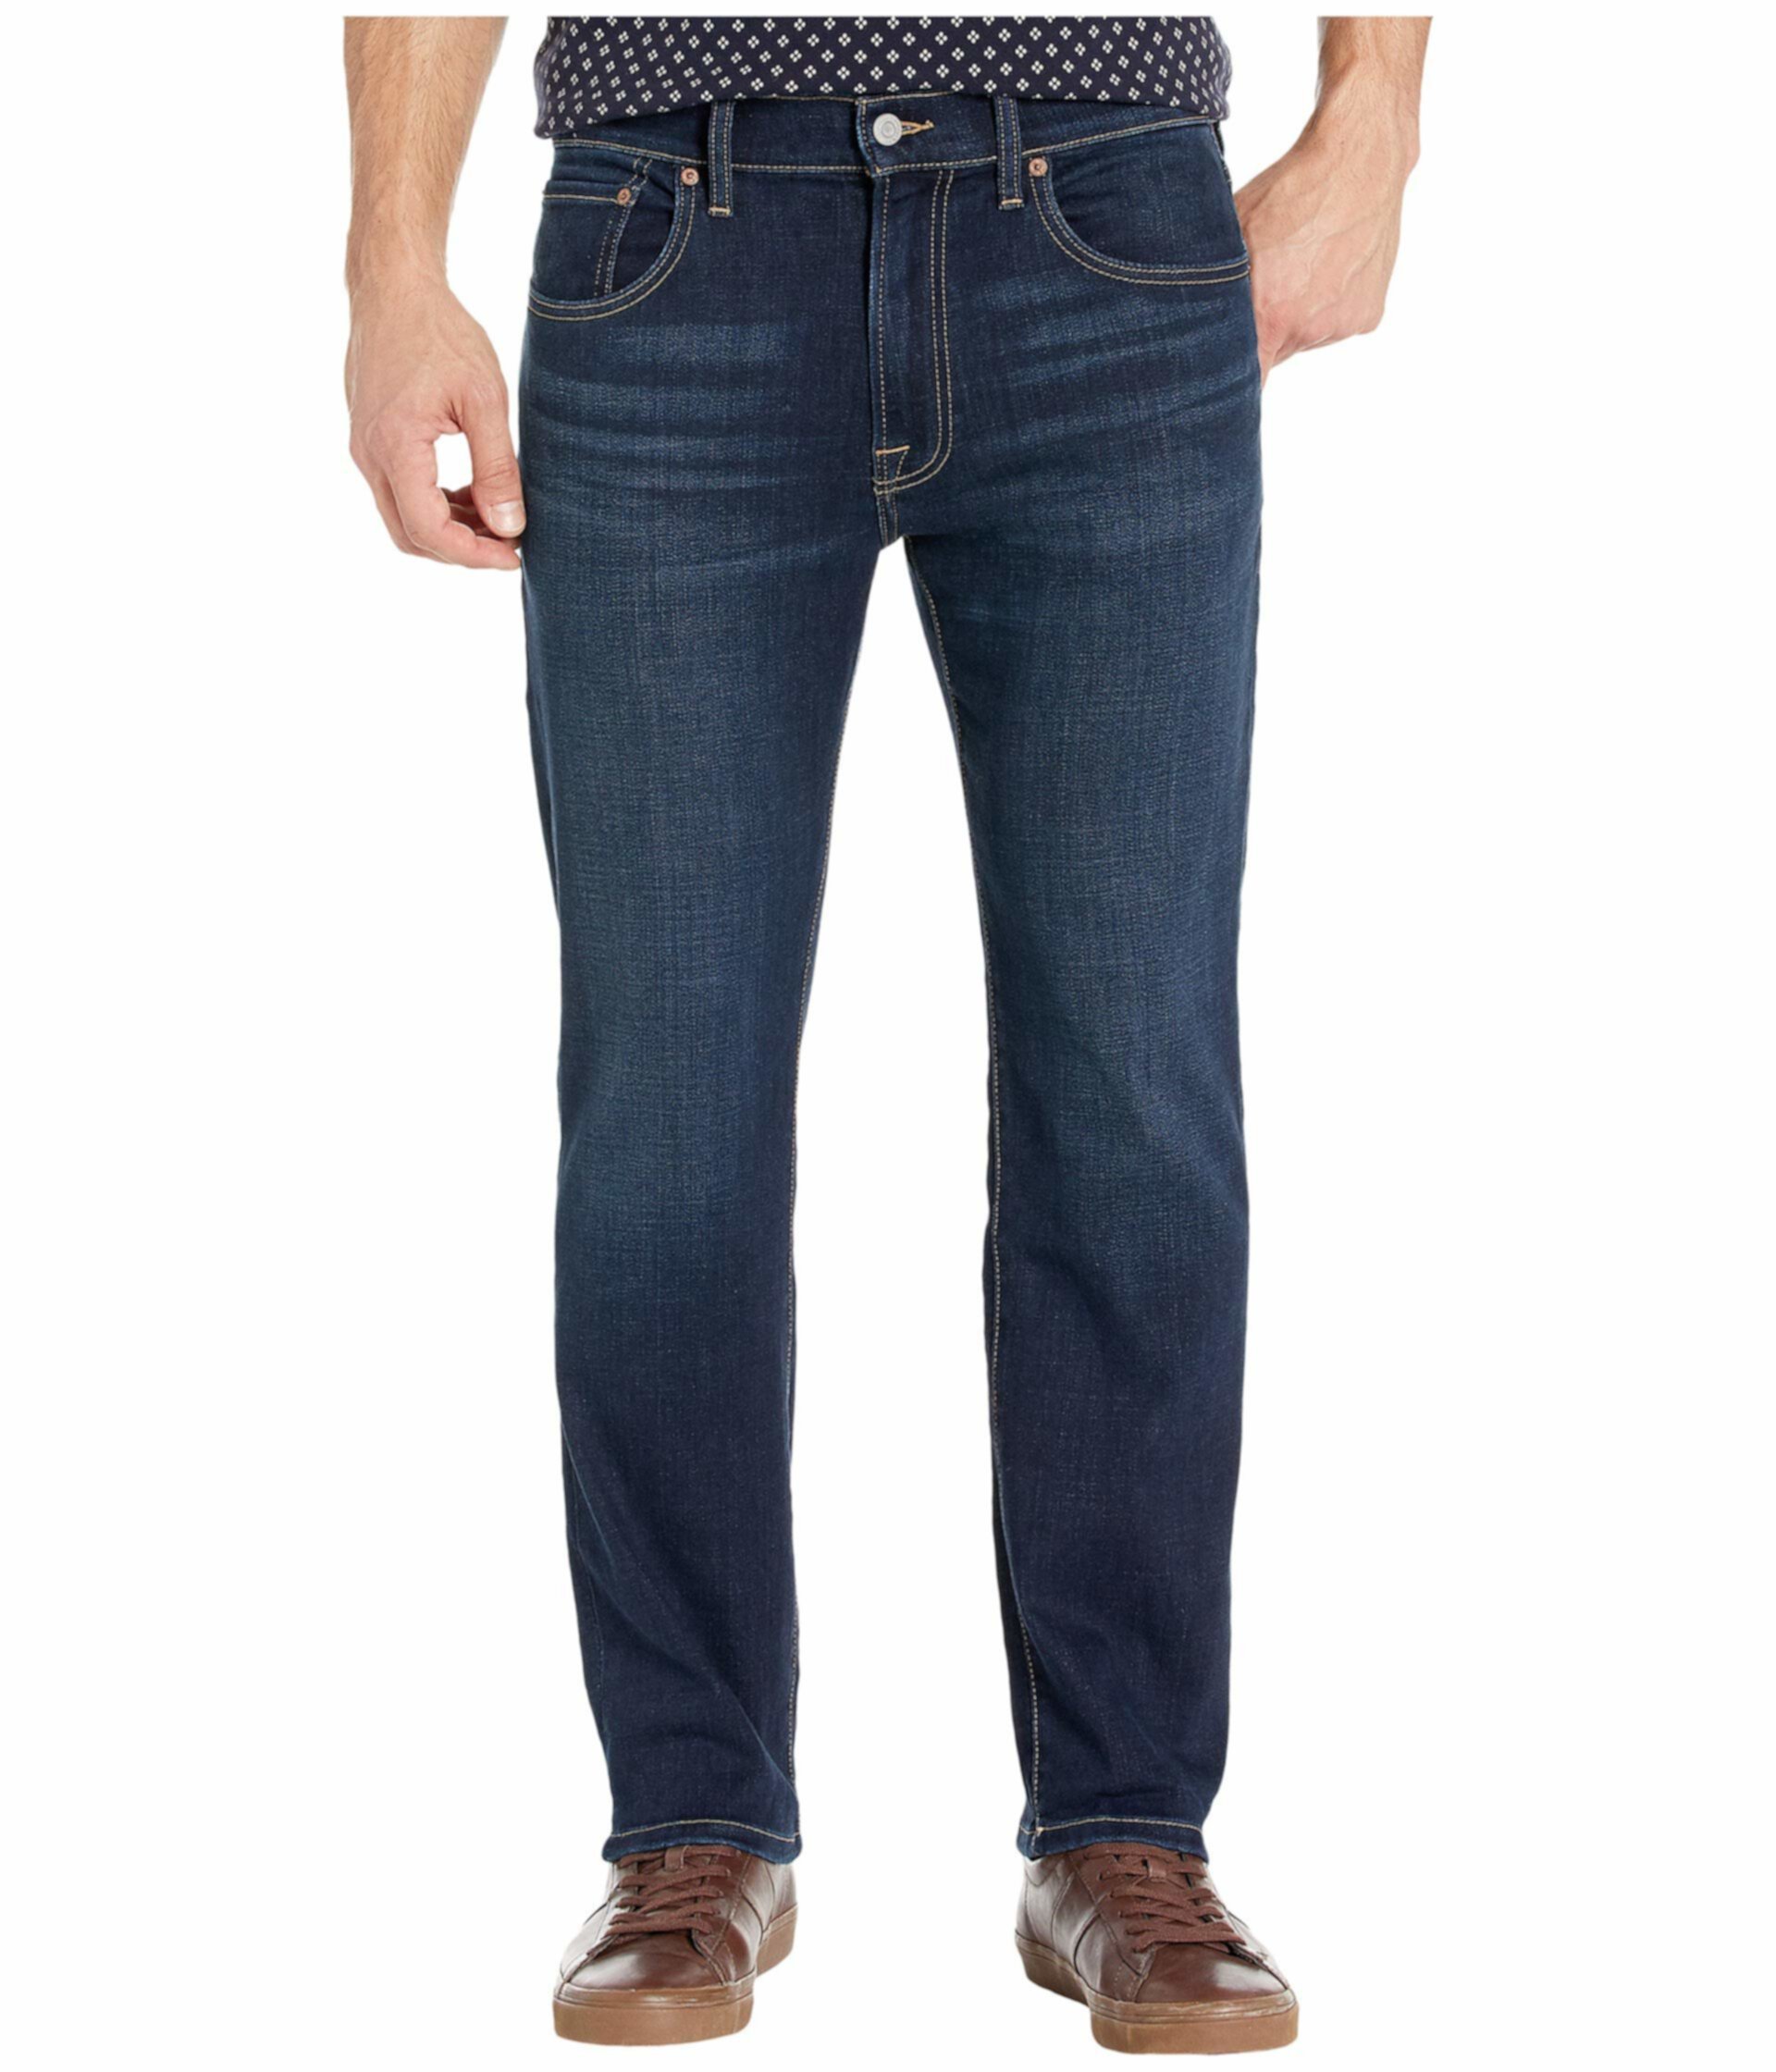 223 Прямые джинсы в цвете Falcon Lucky Brand